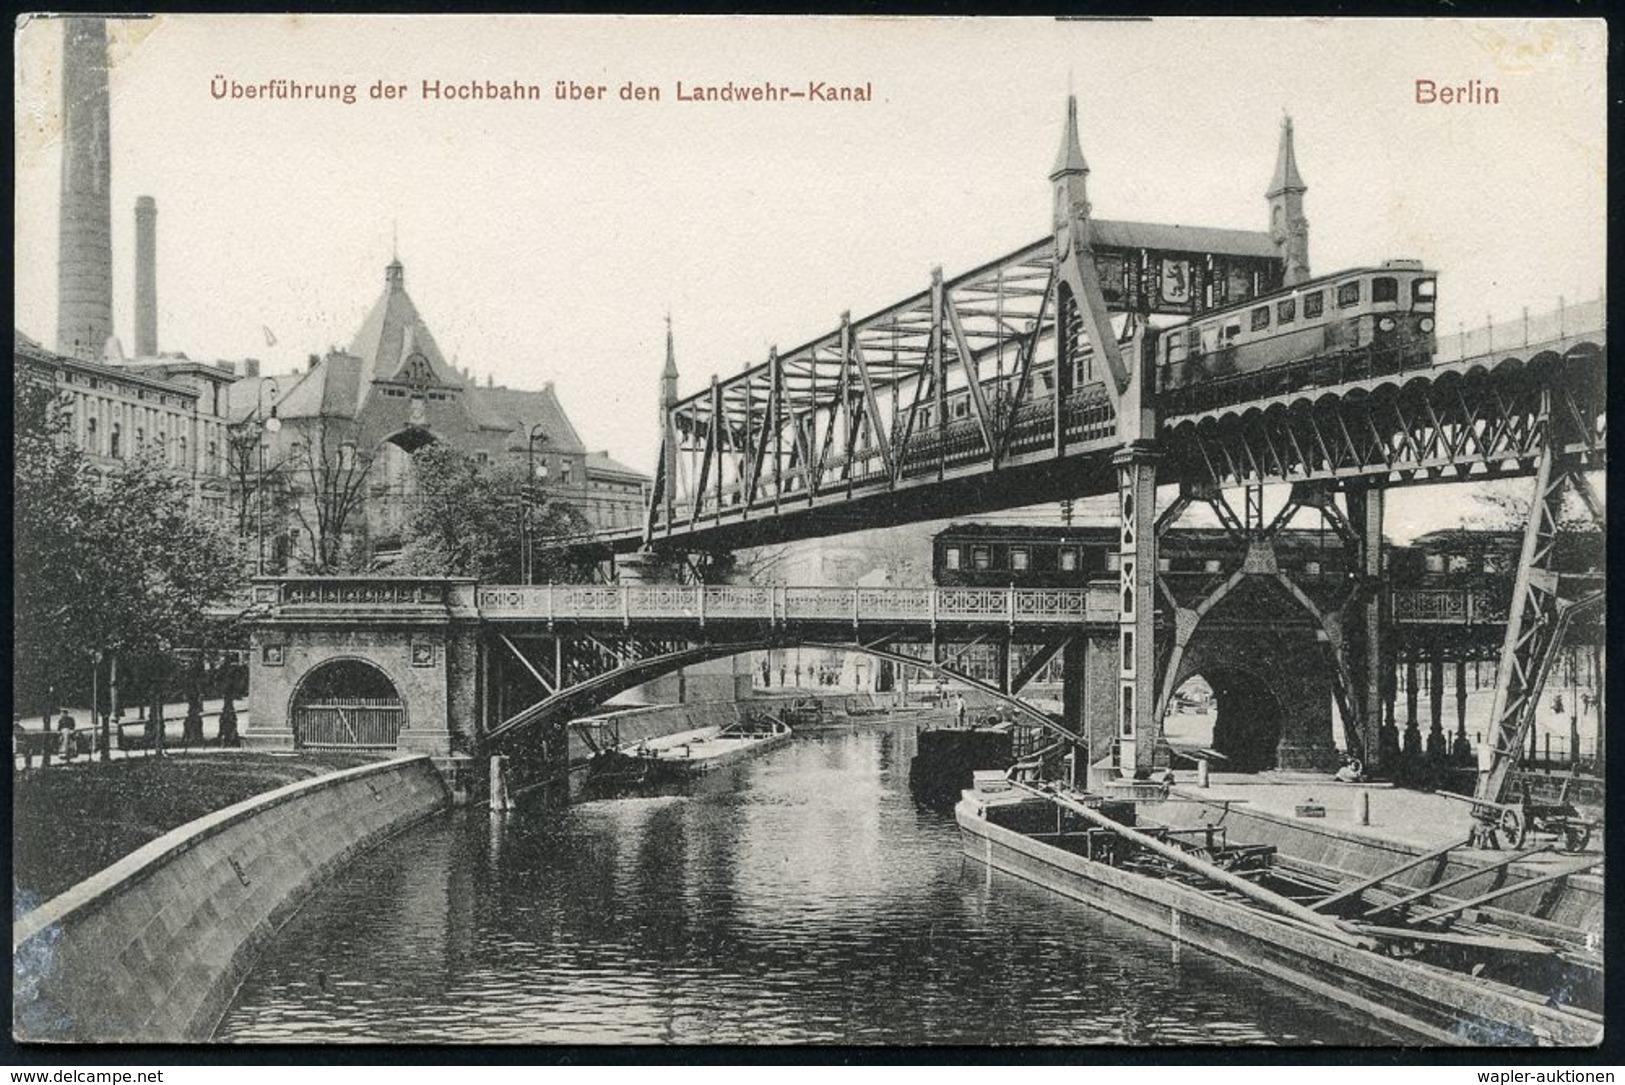 UNTERGRUNDBAHN /U-BAHN : Berlin-Kreuzberg 1907/25 U-Bahn Landwehrkanal/Anhalter Bhf., 13 Verschiedene S/w.-Foto-Ak. , Me - Eisenbahnen